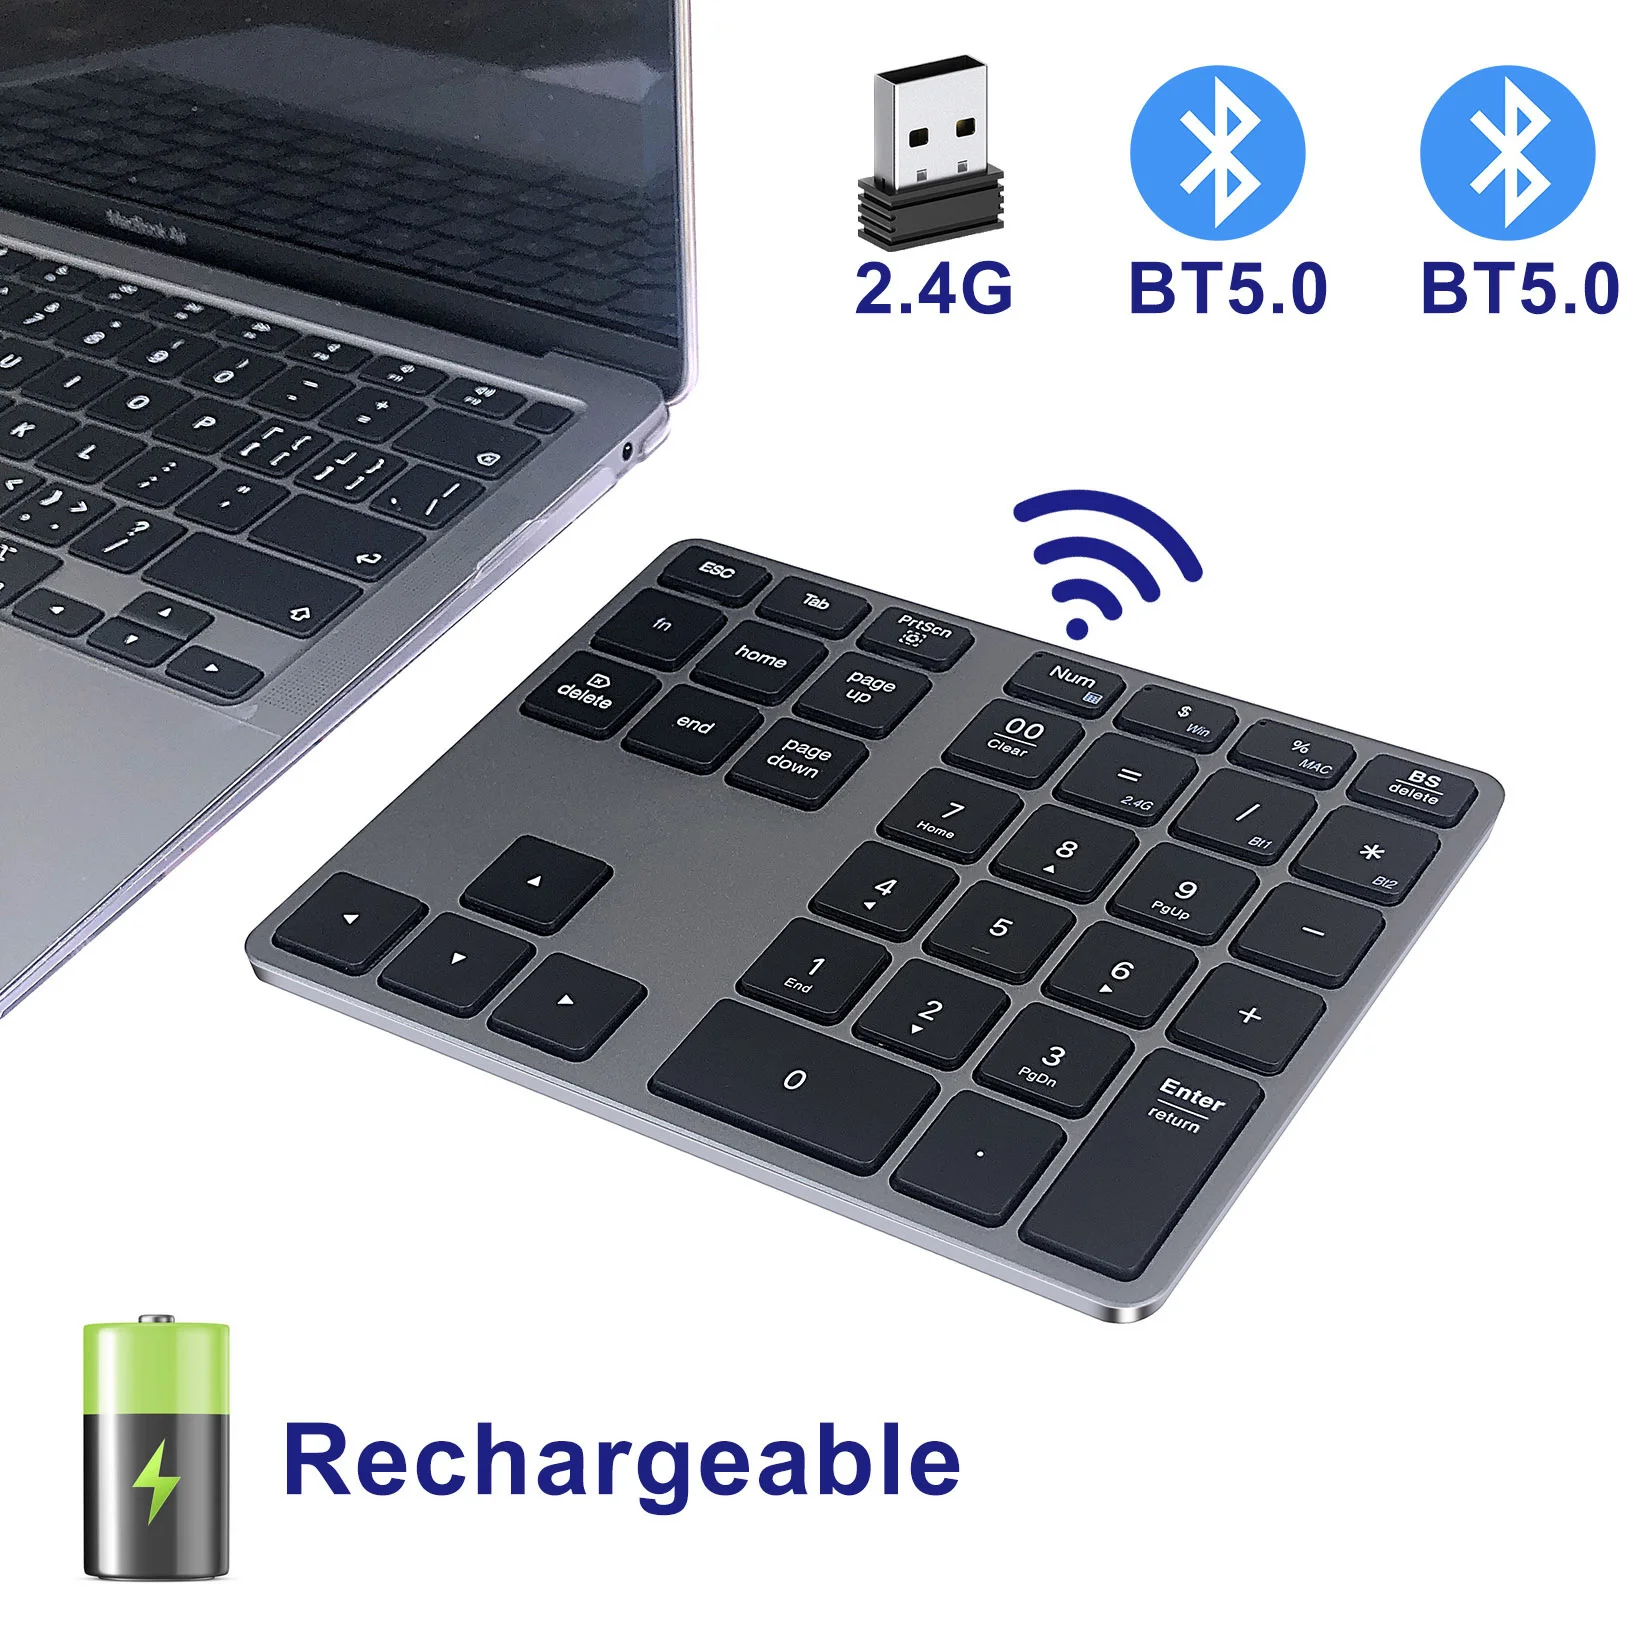 

Bluetooth цифровая клавиатура алюминиевая перезаряжаемая беспроводная цифровая панель Тонкий 35 клавиш USB + BT5.0 цифровая клавиатура для Mac,Macbook, ноутбука